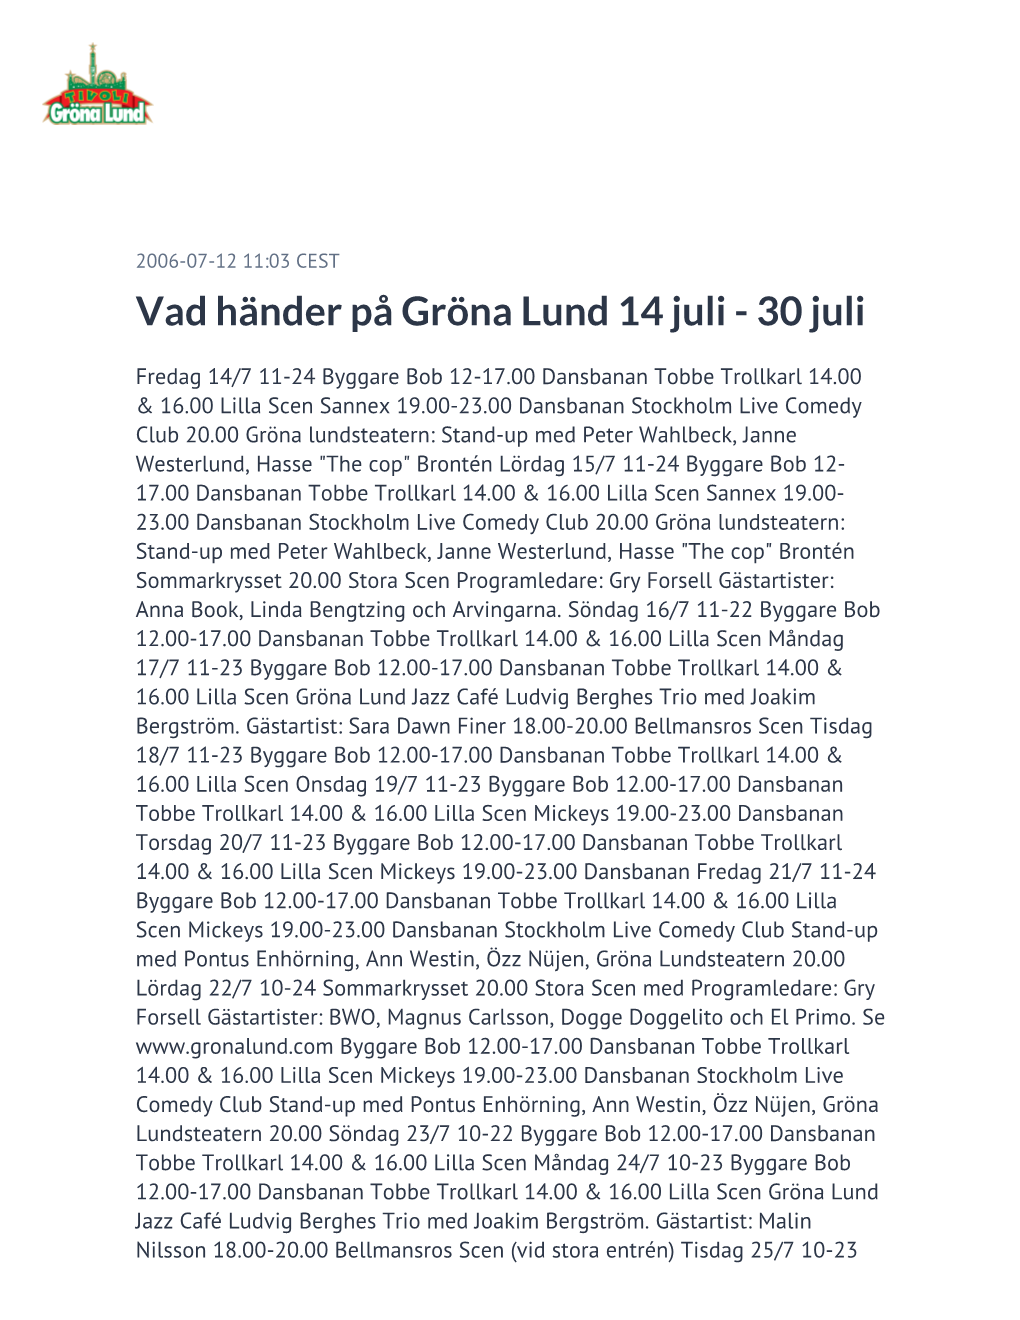 Vad Händer På Gröna Lund 14 Juli - 30 Juli